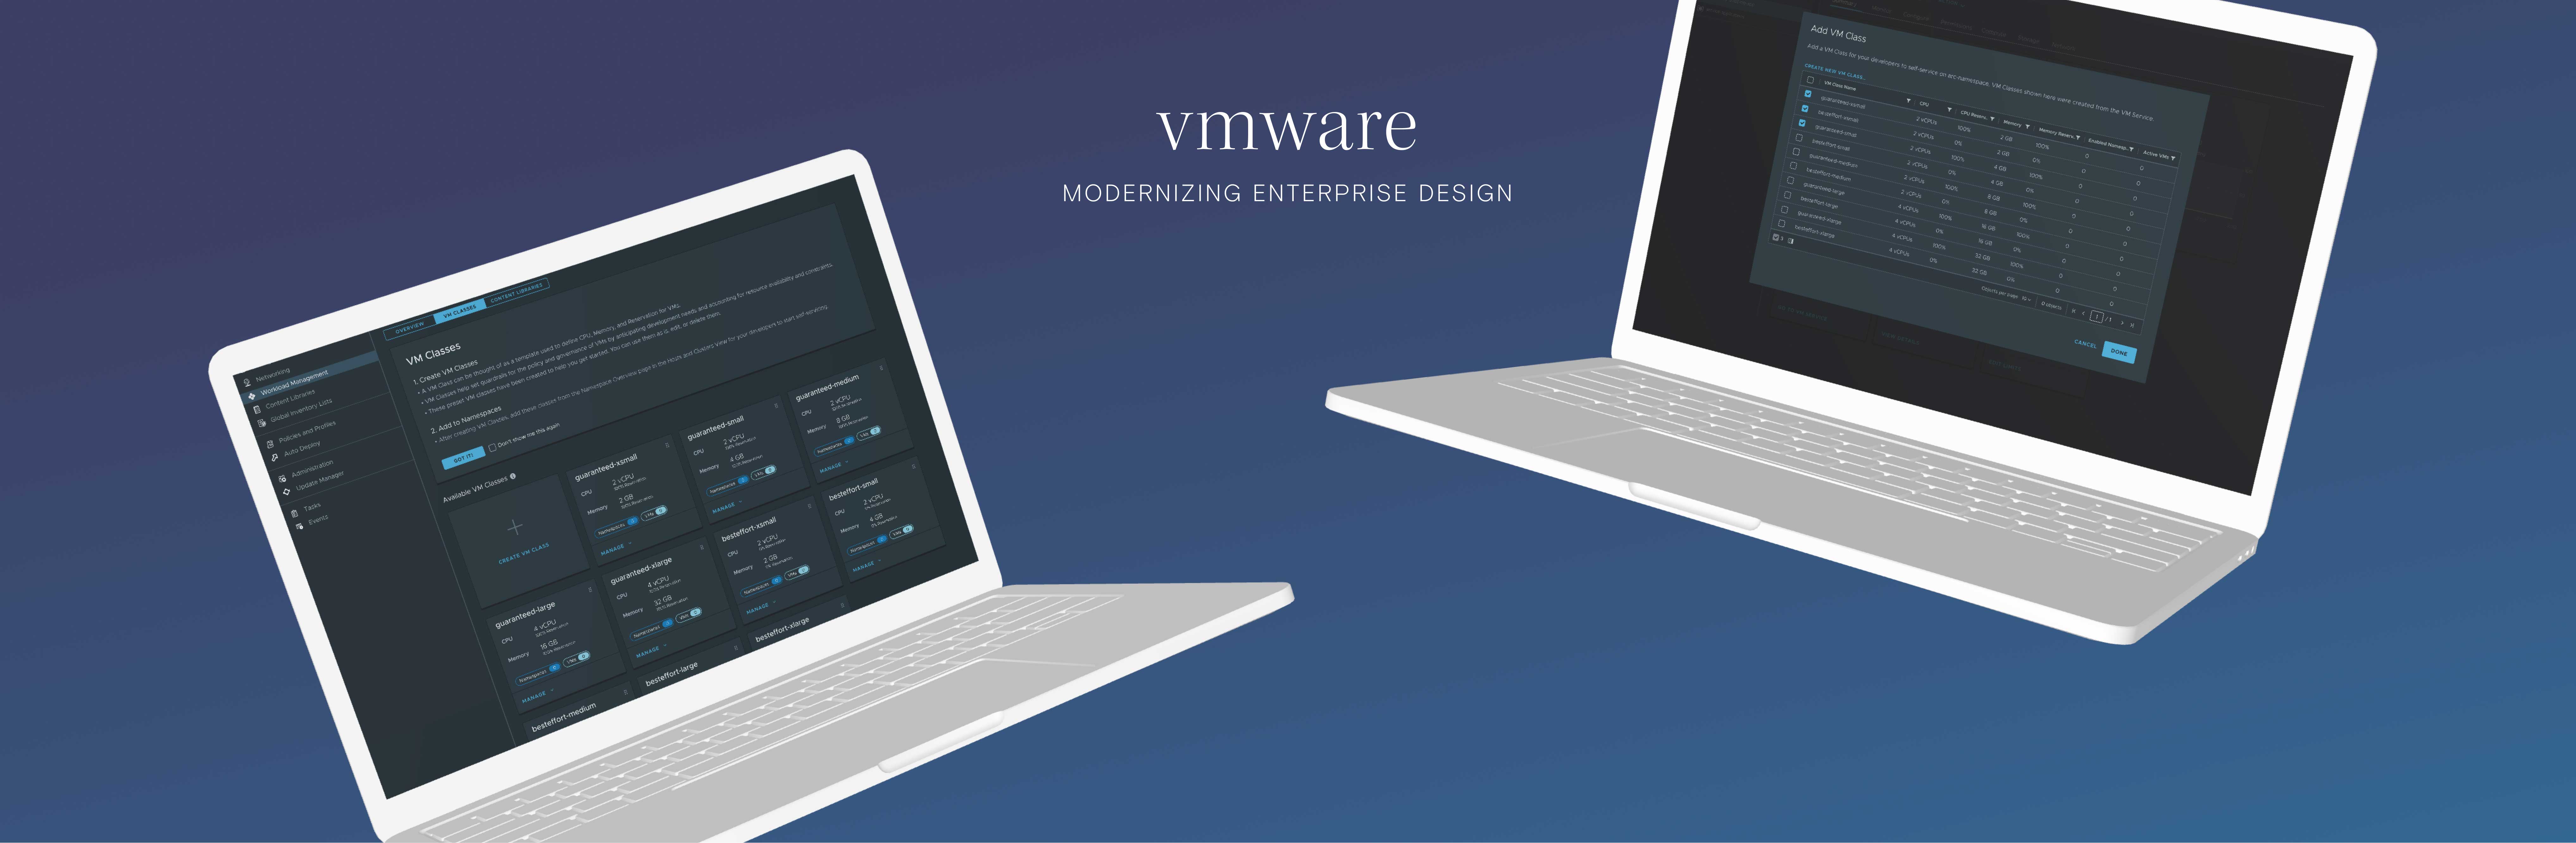 vmware-laptop-cover-image-medium